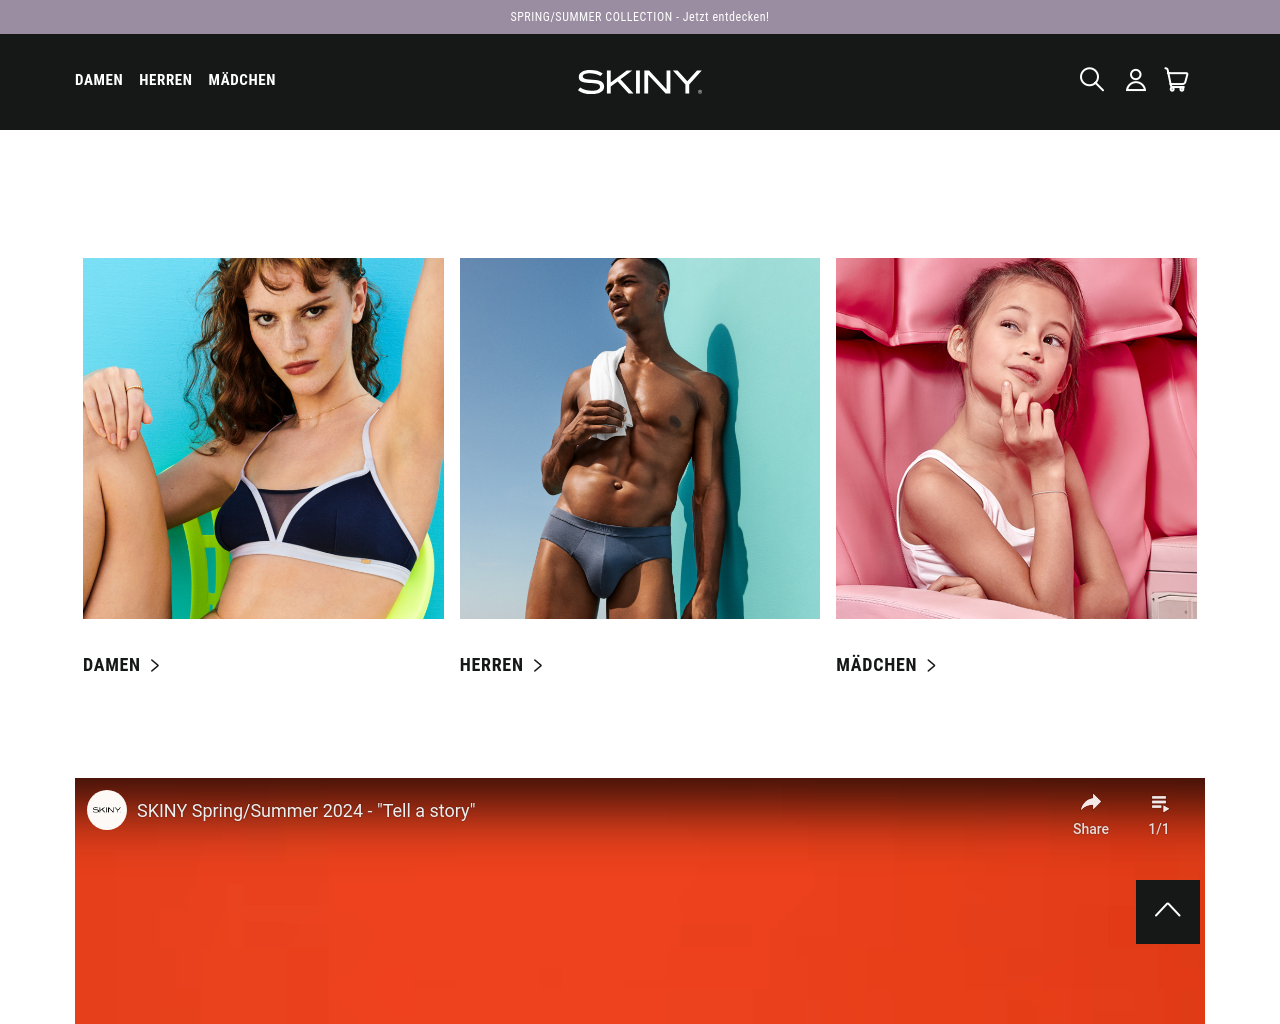 skiny.com